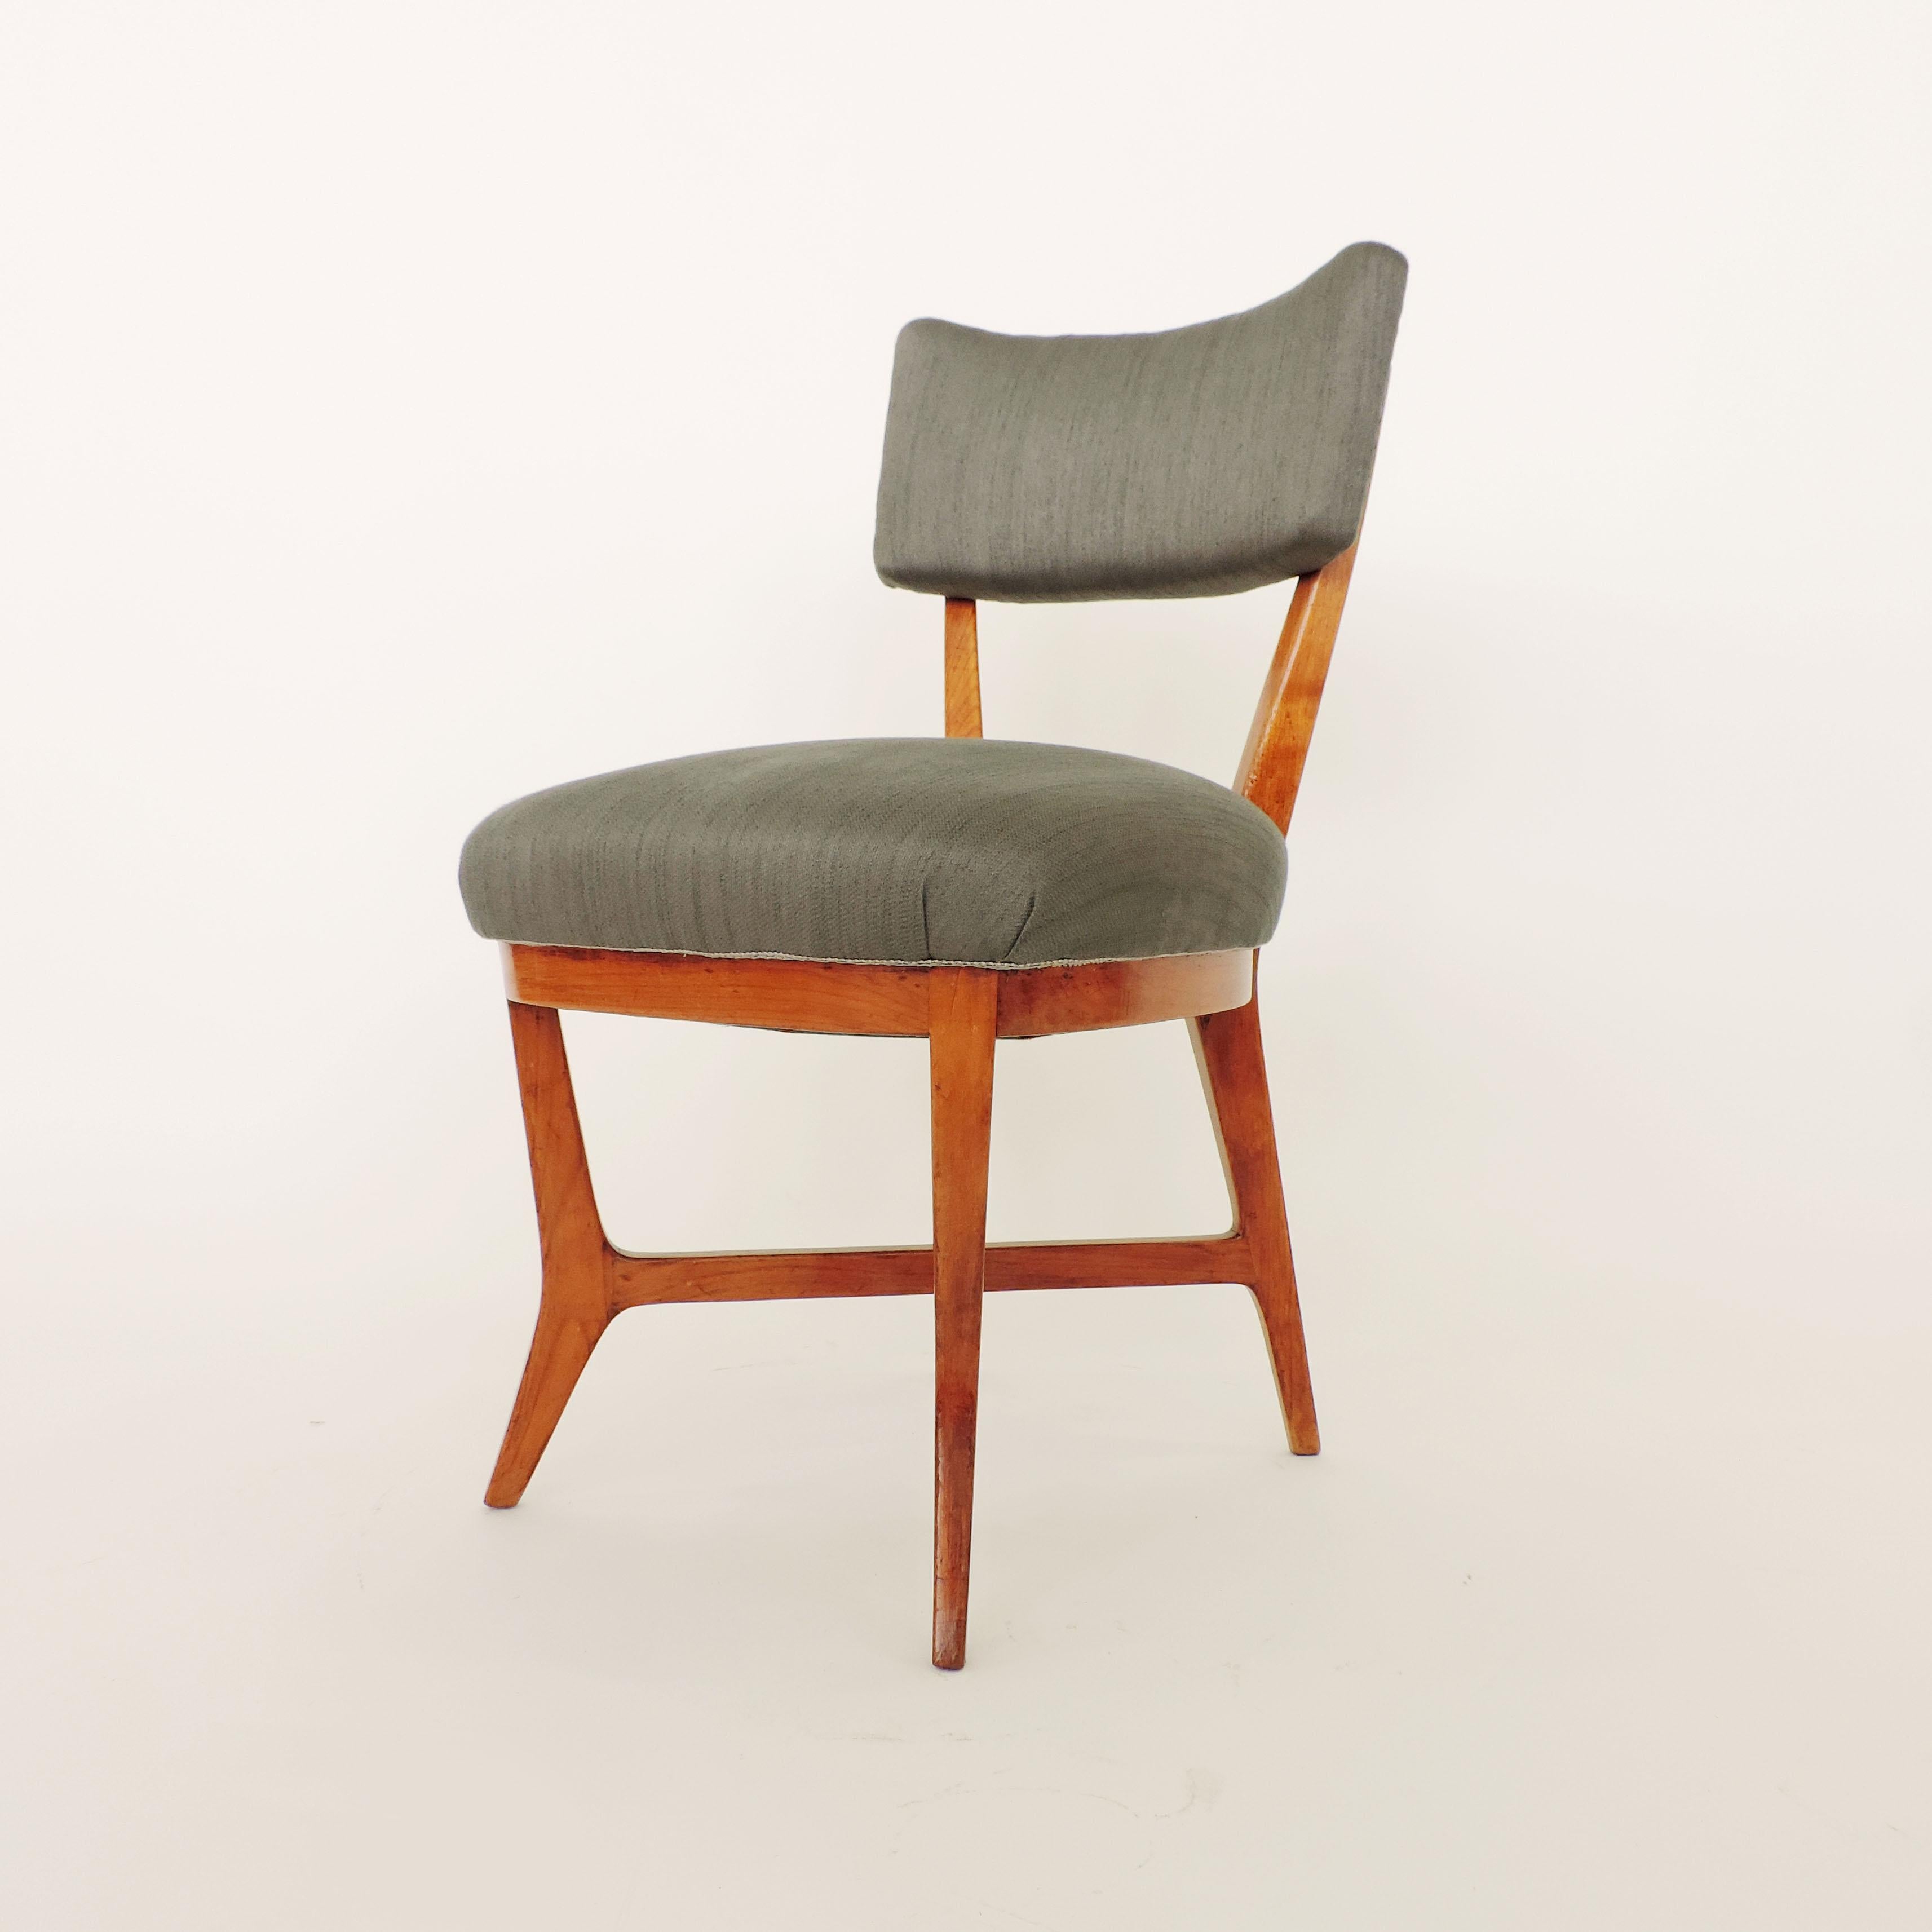 Vier Stühle, die dem Studio BBPR zugeschrieben werden
Die Struktur ist identisch mit den späteren Versionen der Elettra-Stühle, die für Arflex hergestellt wurden.